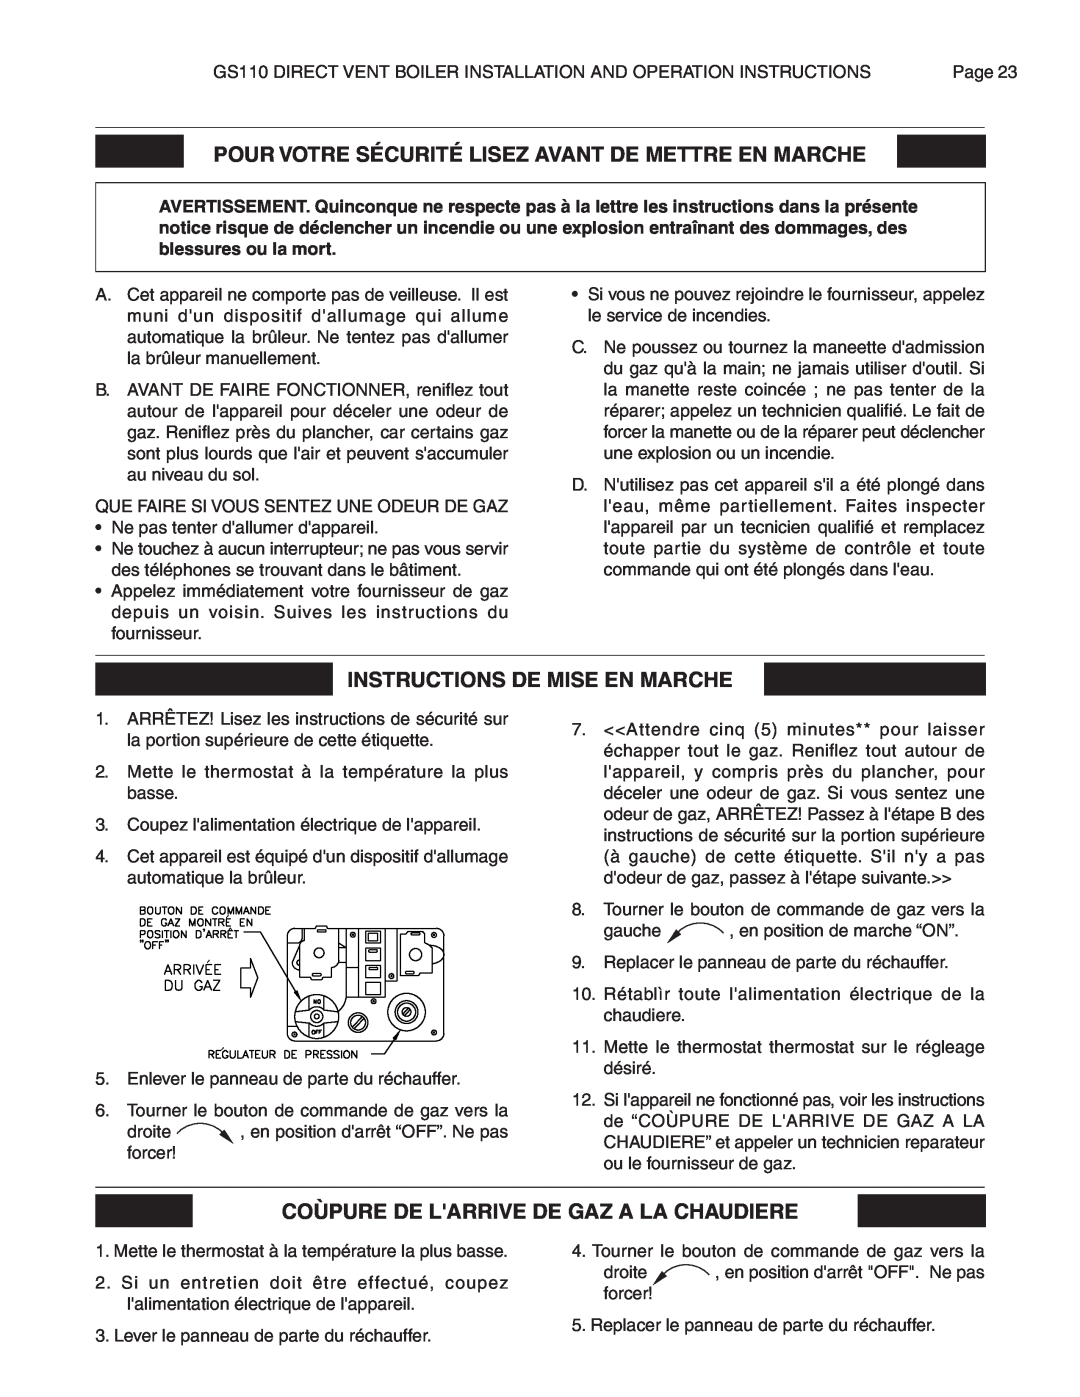 Smith Cast Iron Boilers GS110W operation manual Instructions De Mise En Marche, Coùpure De Larrive De Gaz A La Chaudiere 